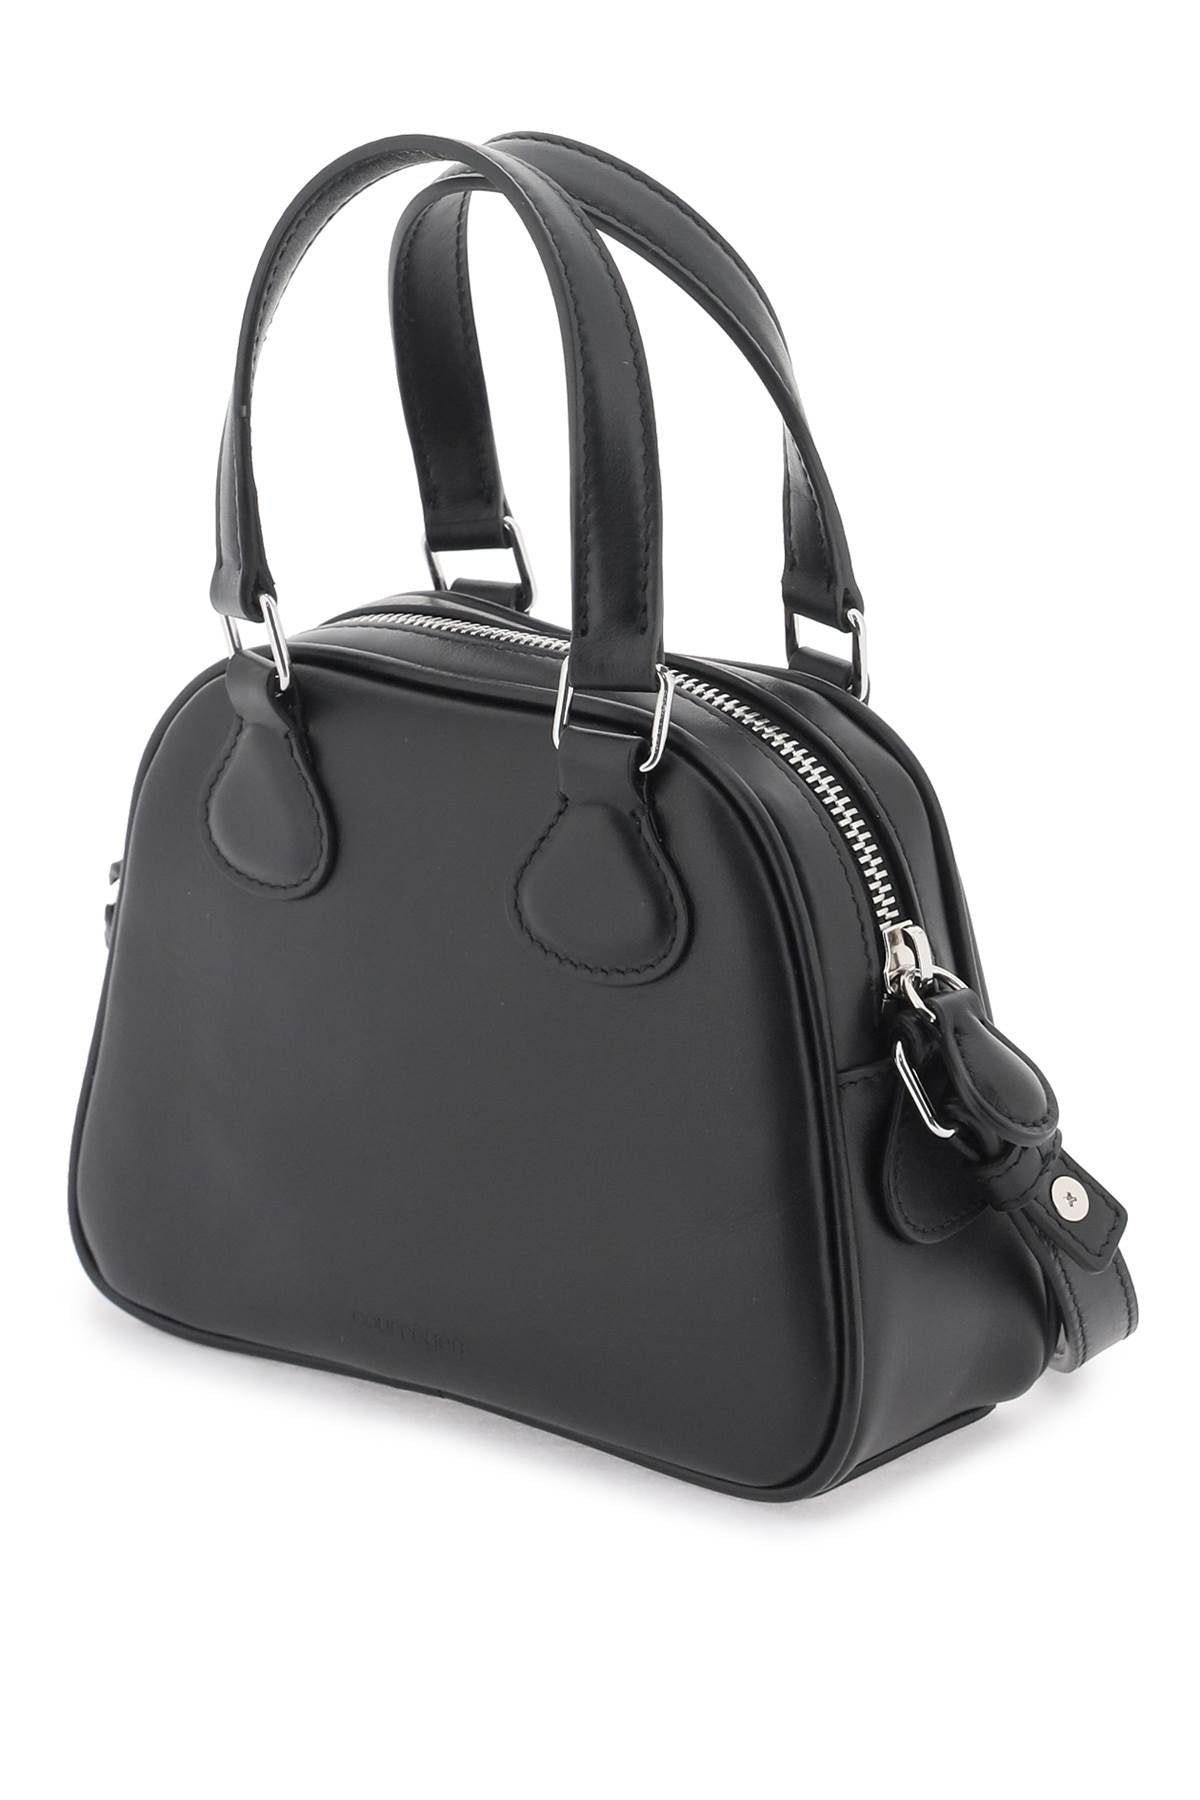 حقيبة يد جلدية سوداء صغيرة مزودة بتفاصيل فضية وزخرفة حروف